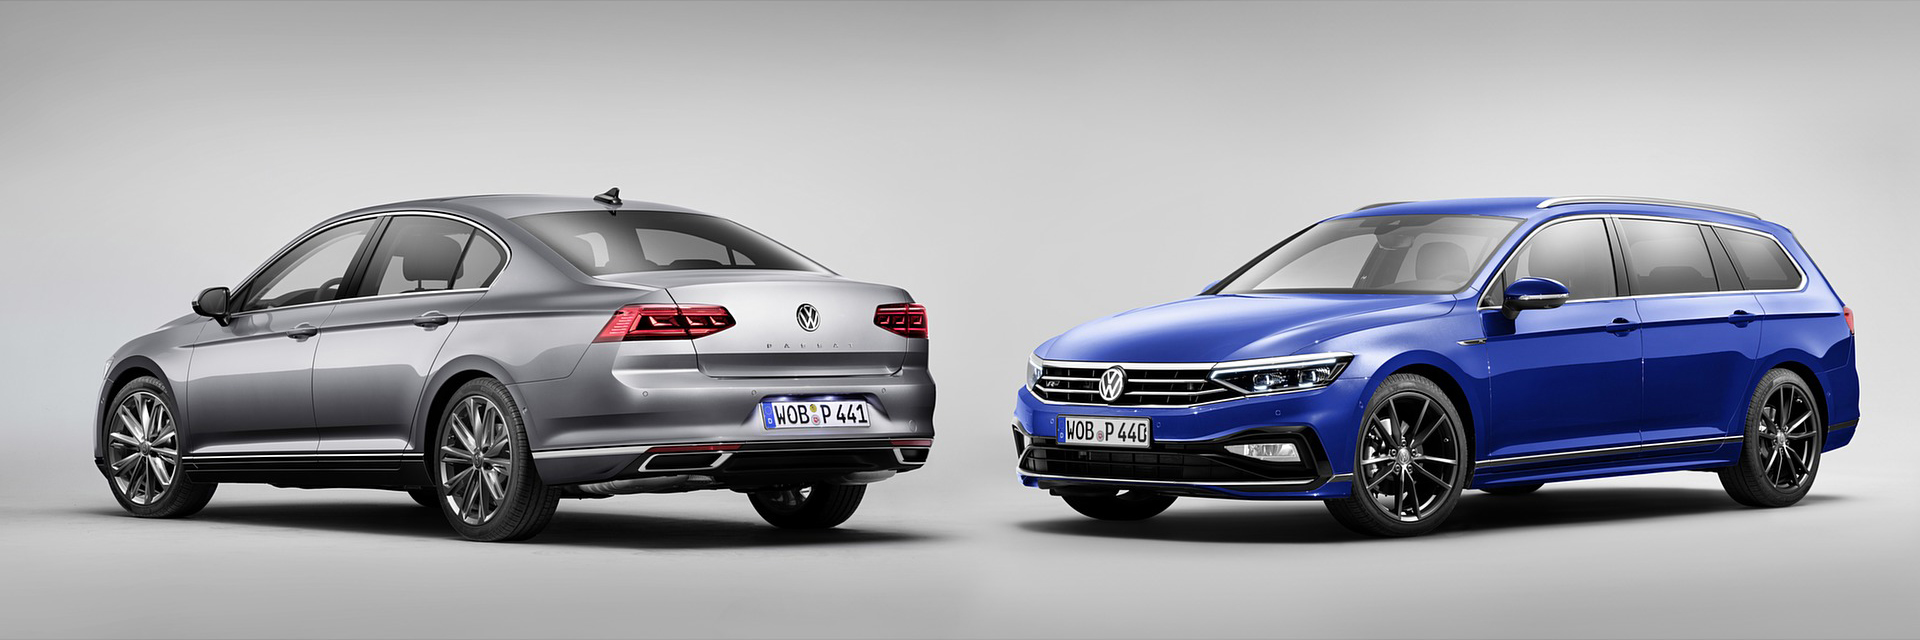 Volkswagen Passat, carros novos, carros km0, carros serviço, carros usados